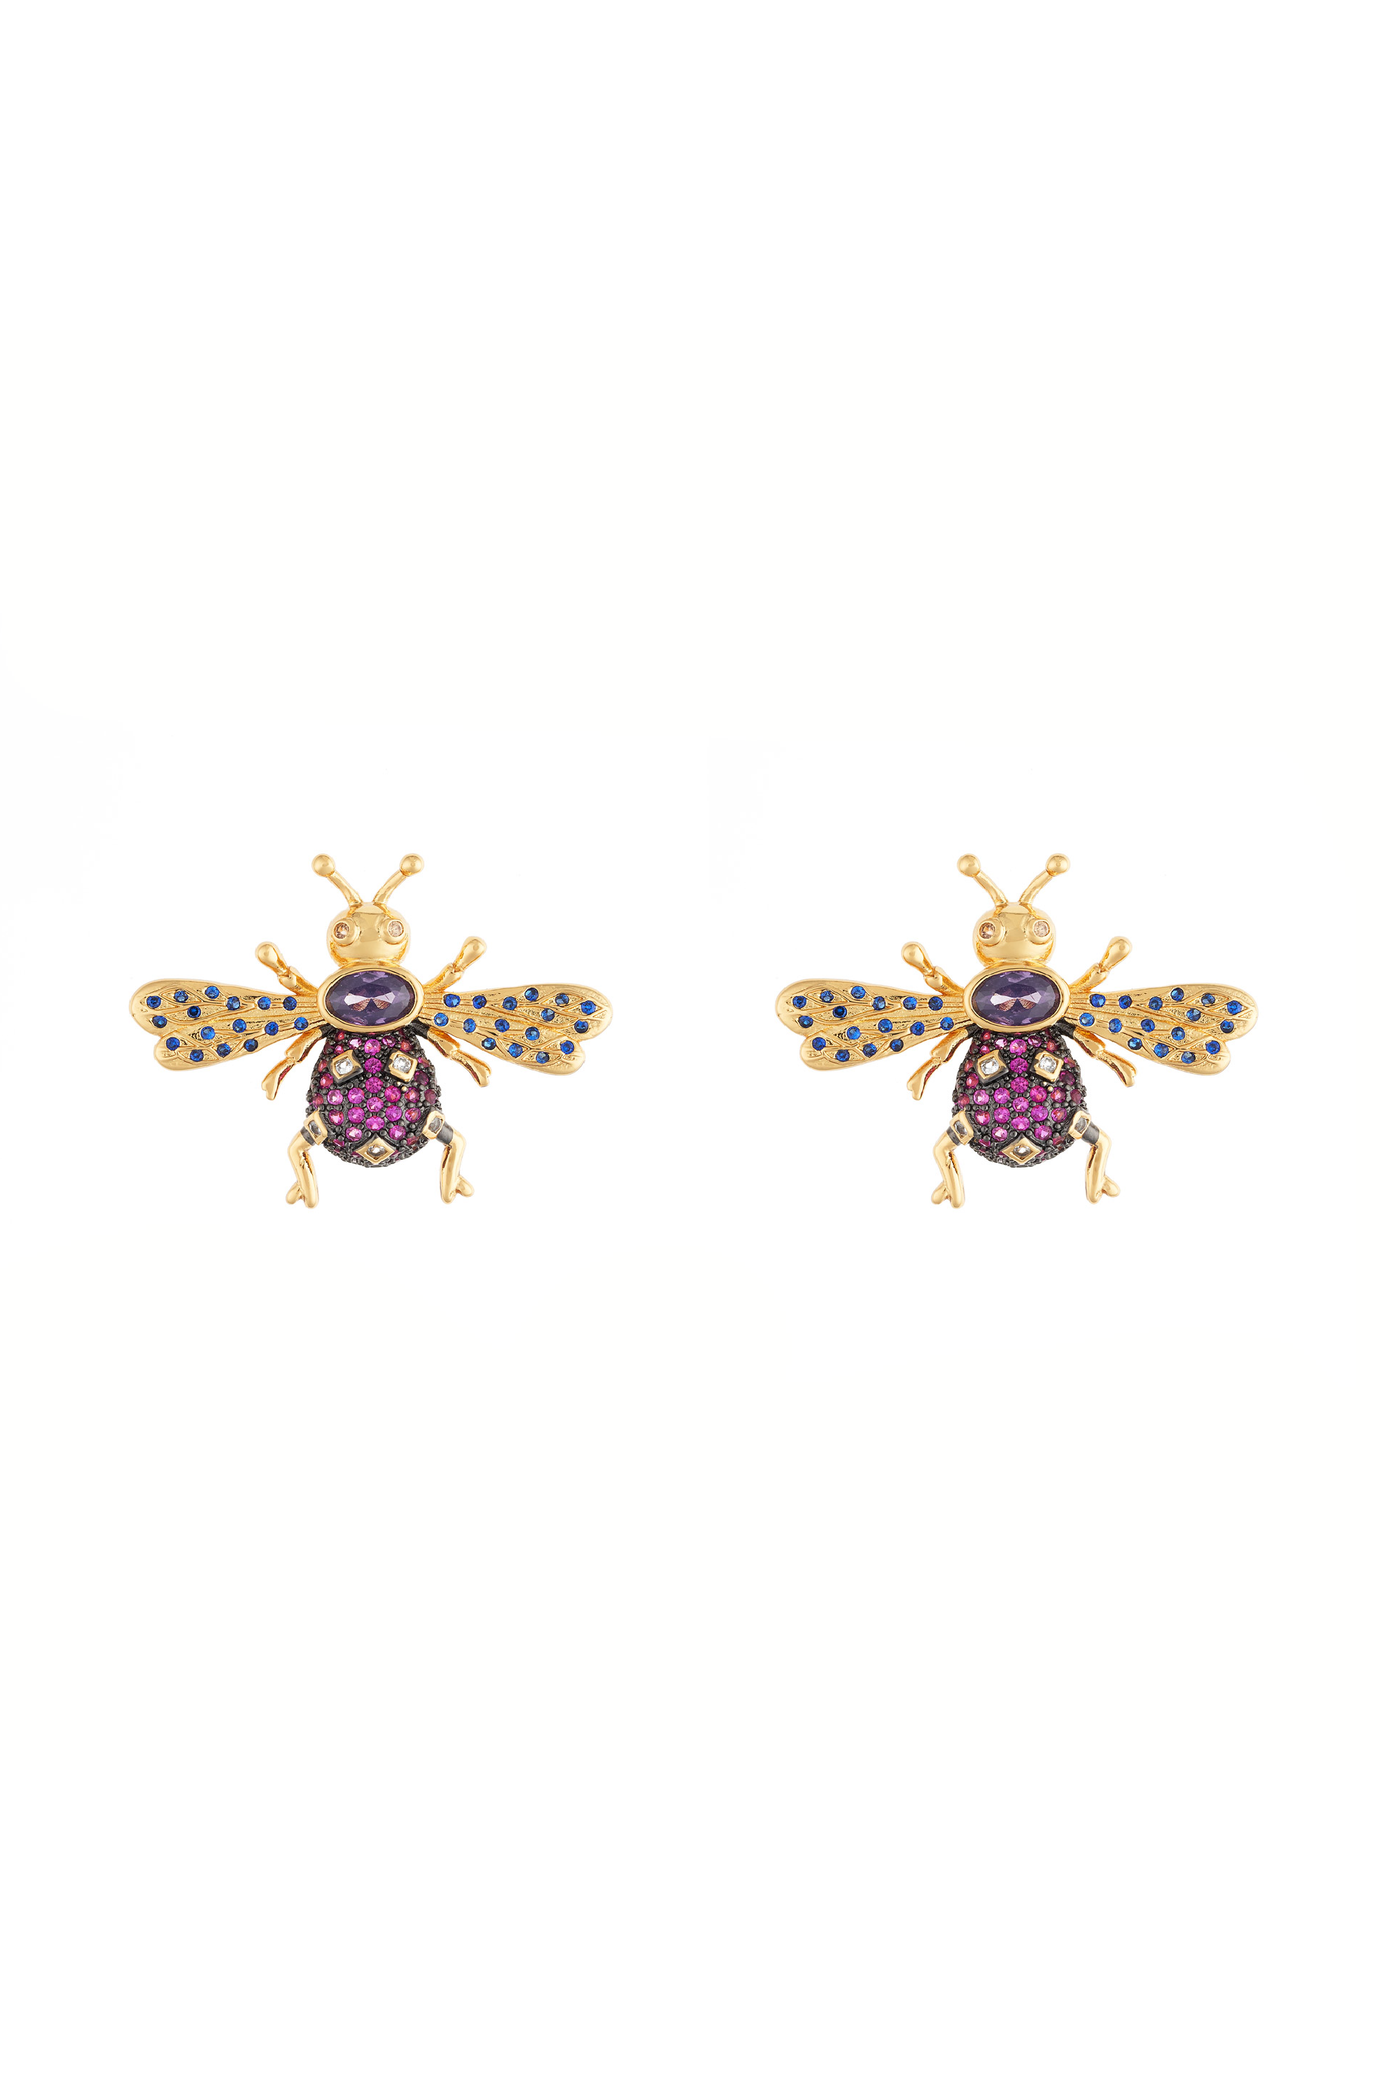 Queen Bee Studd Earrings